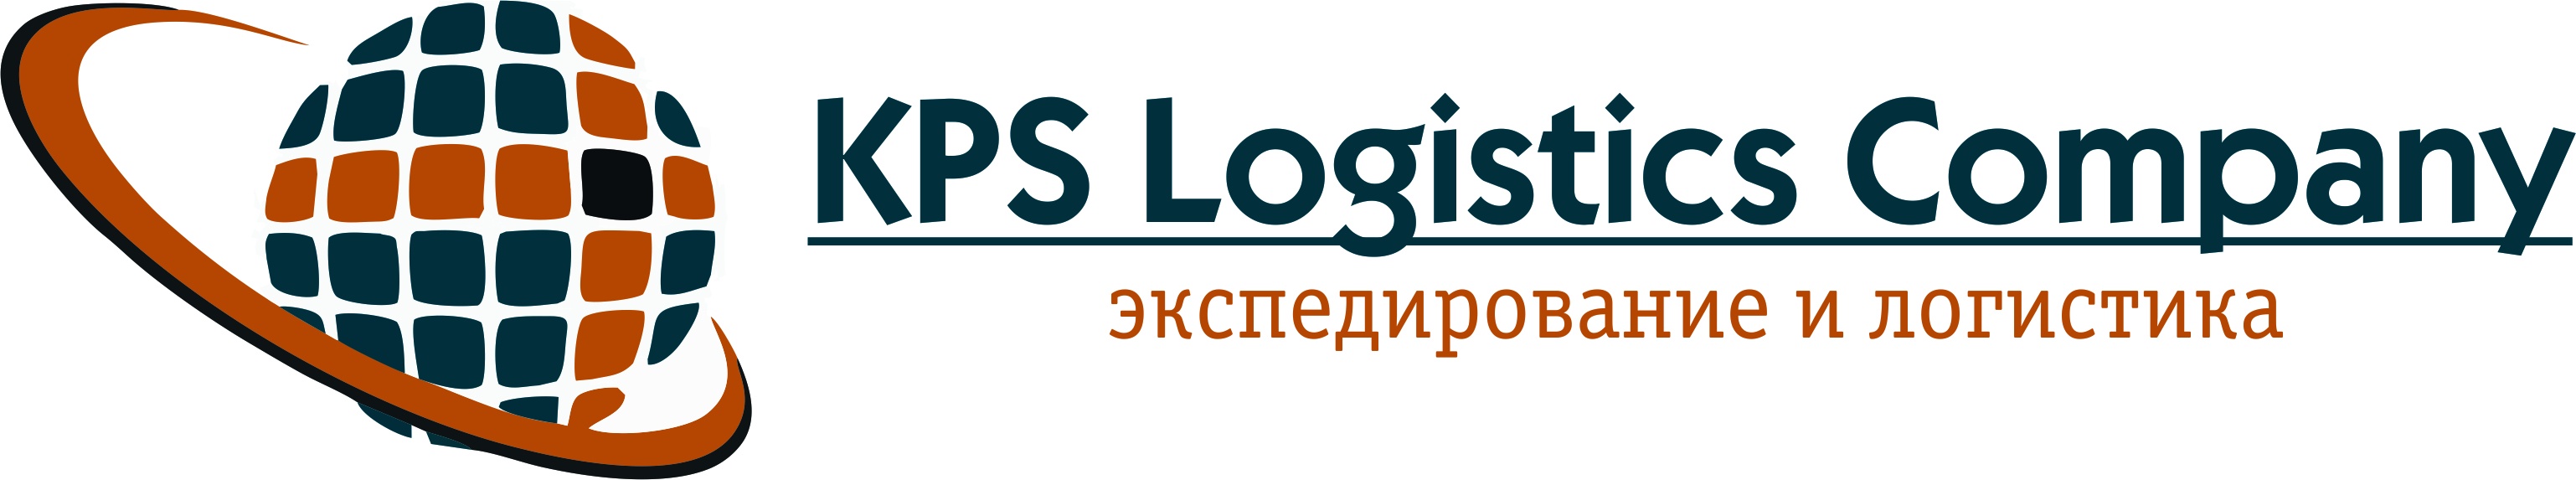 KPS Logistics Company